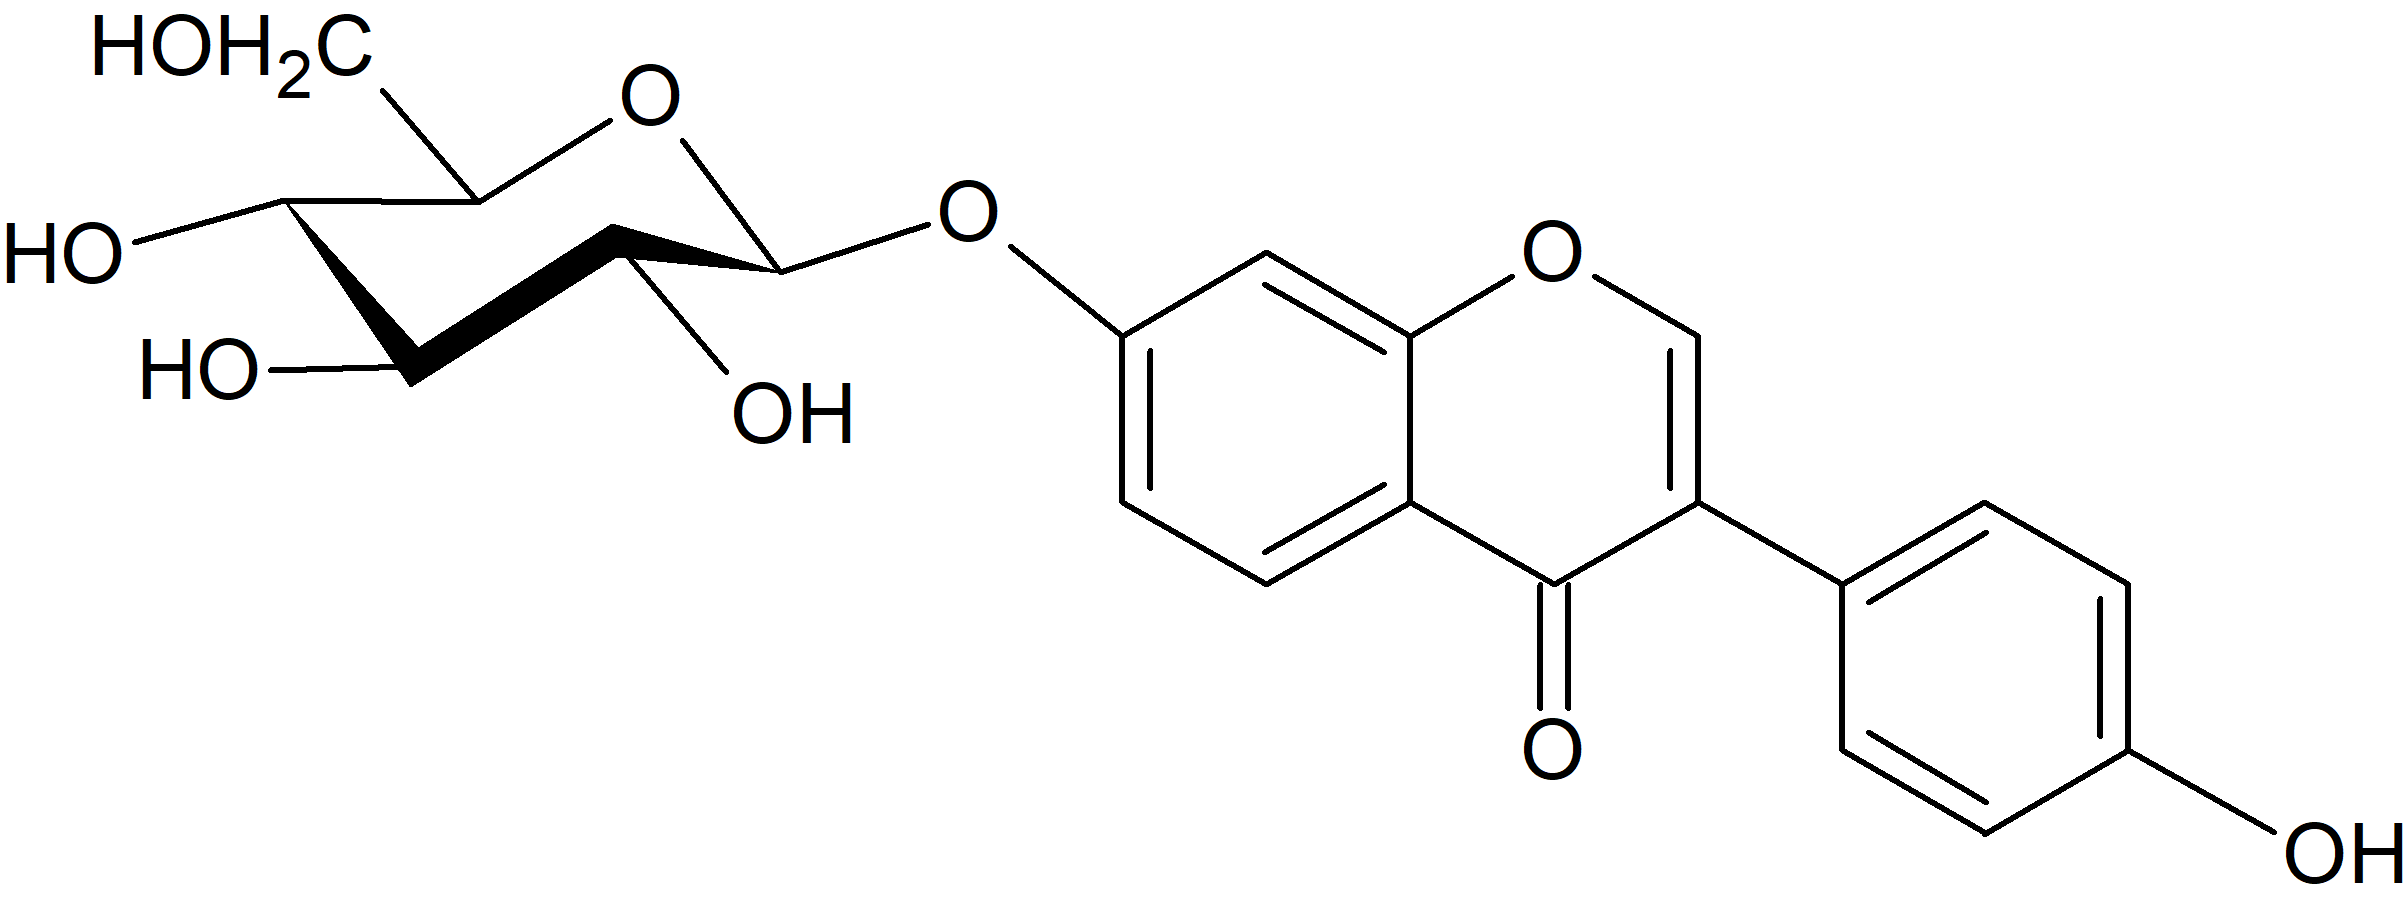 Daidzein 7-O-glucoside